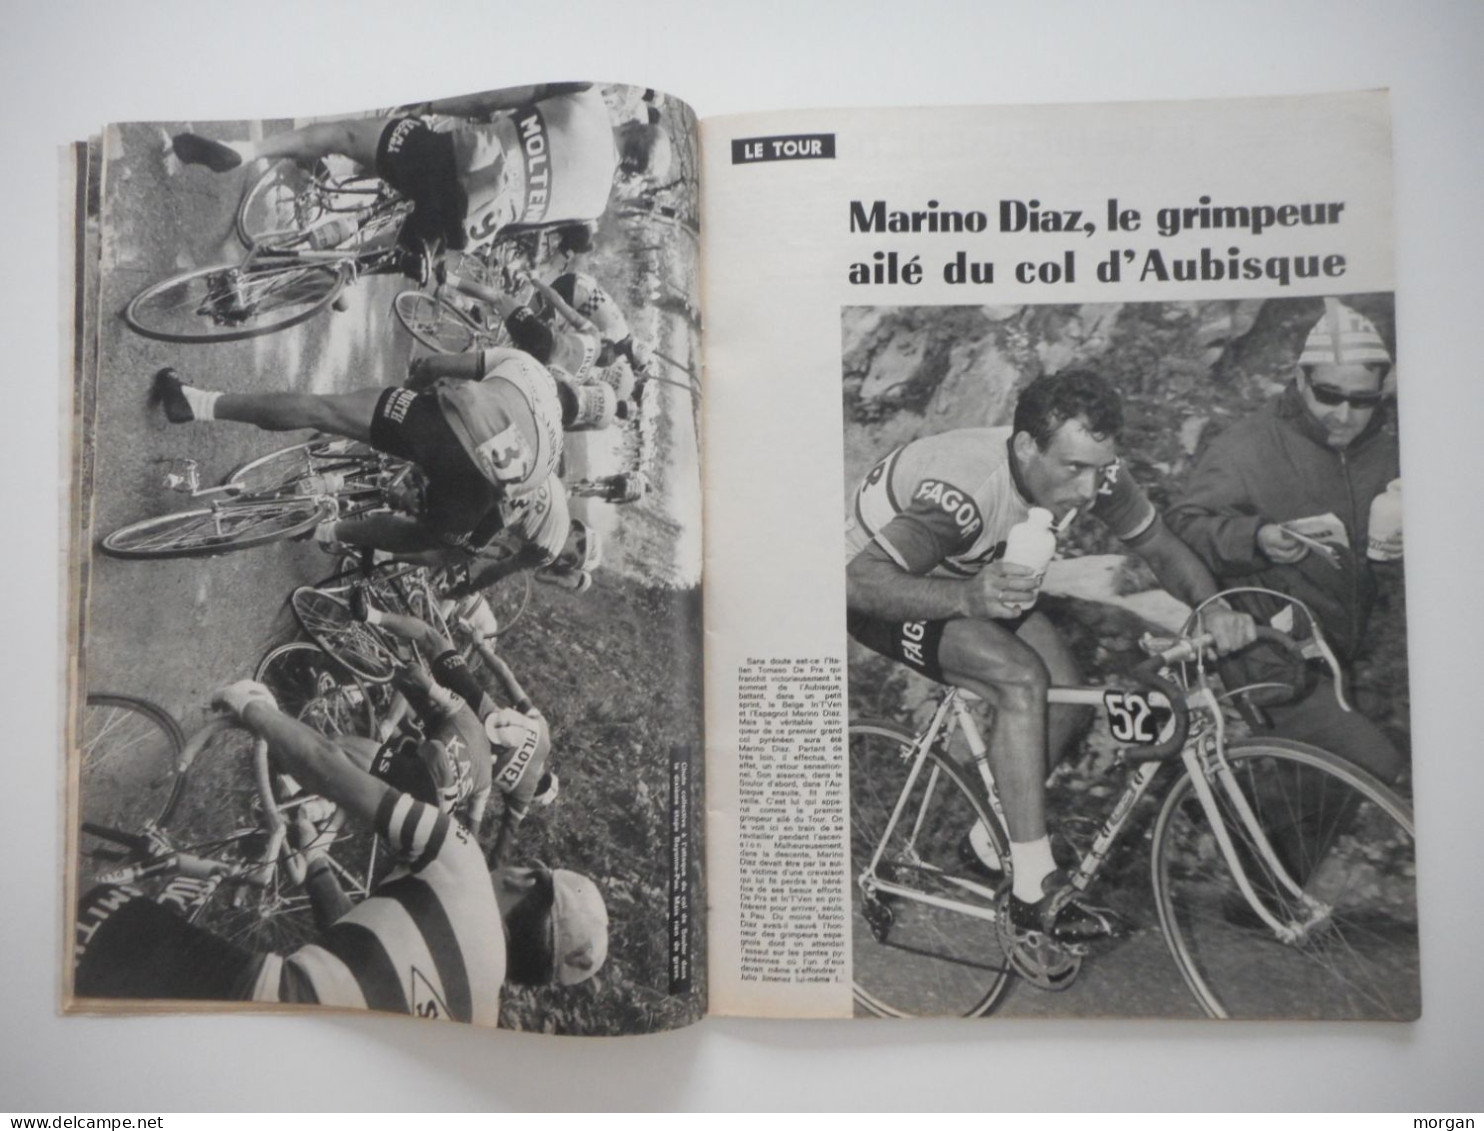 CYCLISME, TOUR DE FRANCE 1966, L'HISTOIRE DU TOUR 66, MIROIR DES SPORTS, REVUE BE ILLUSTREE - Sport